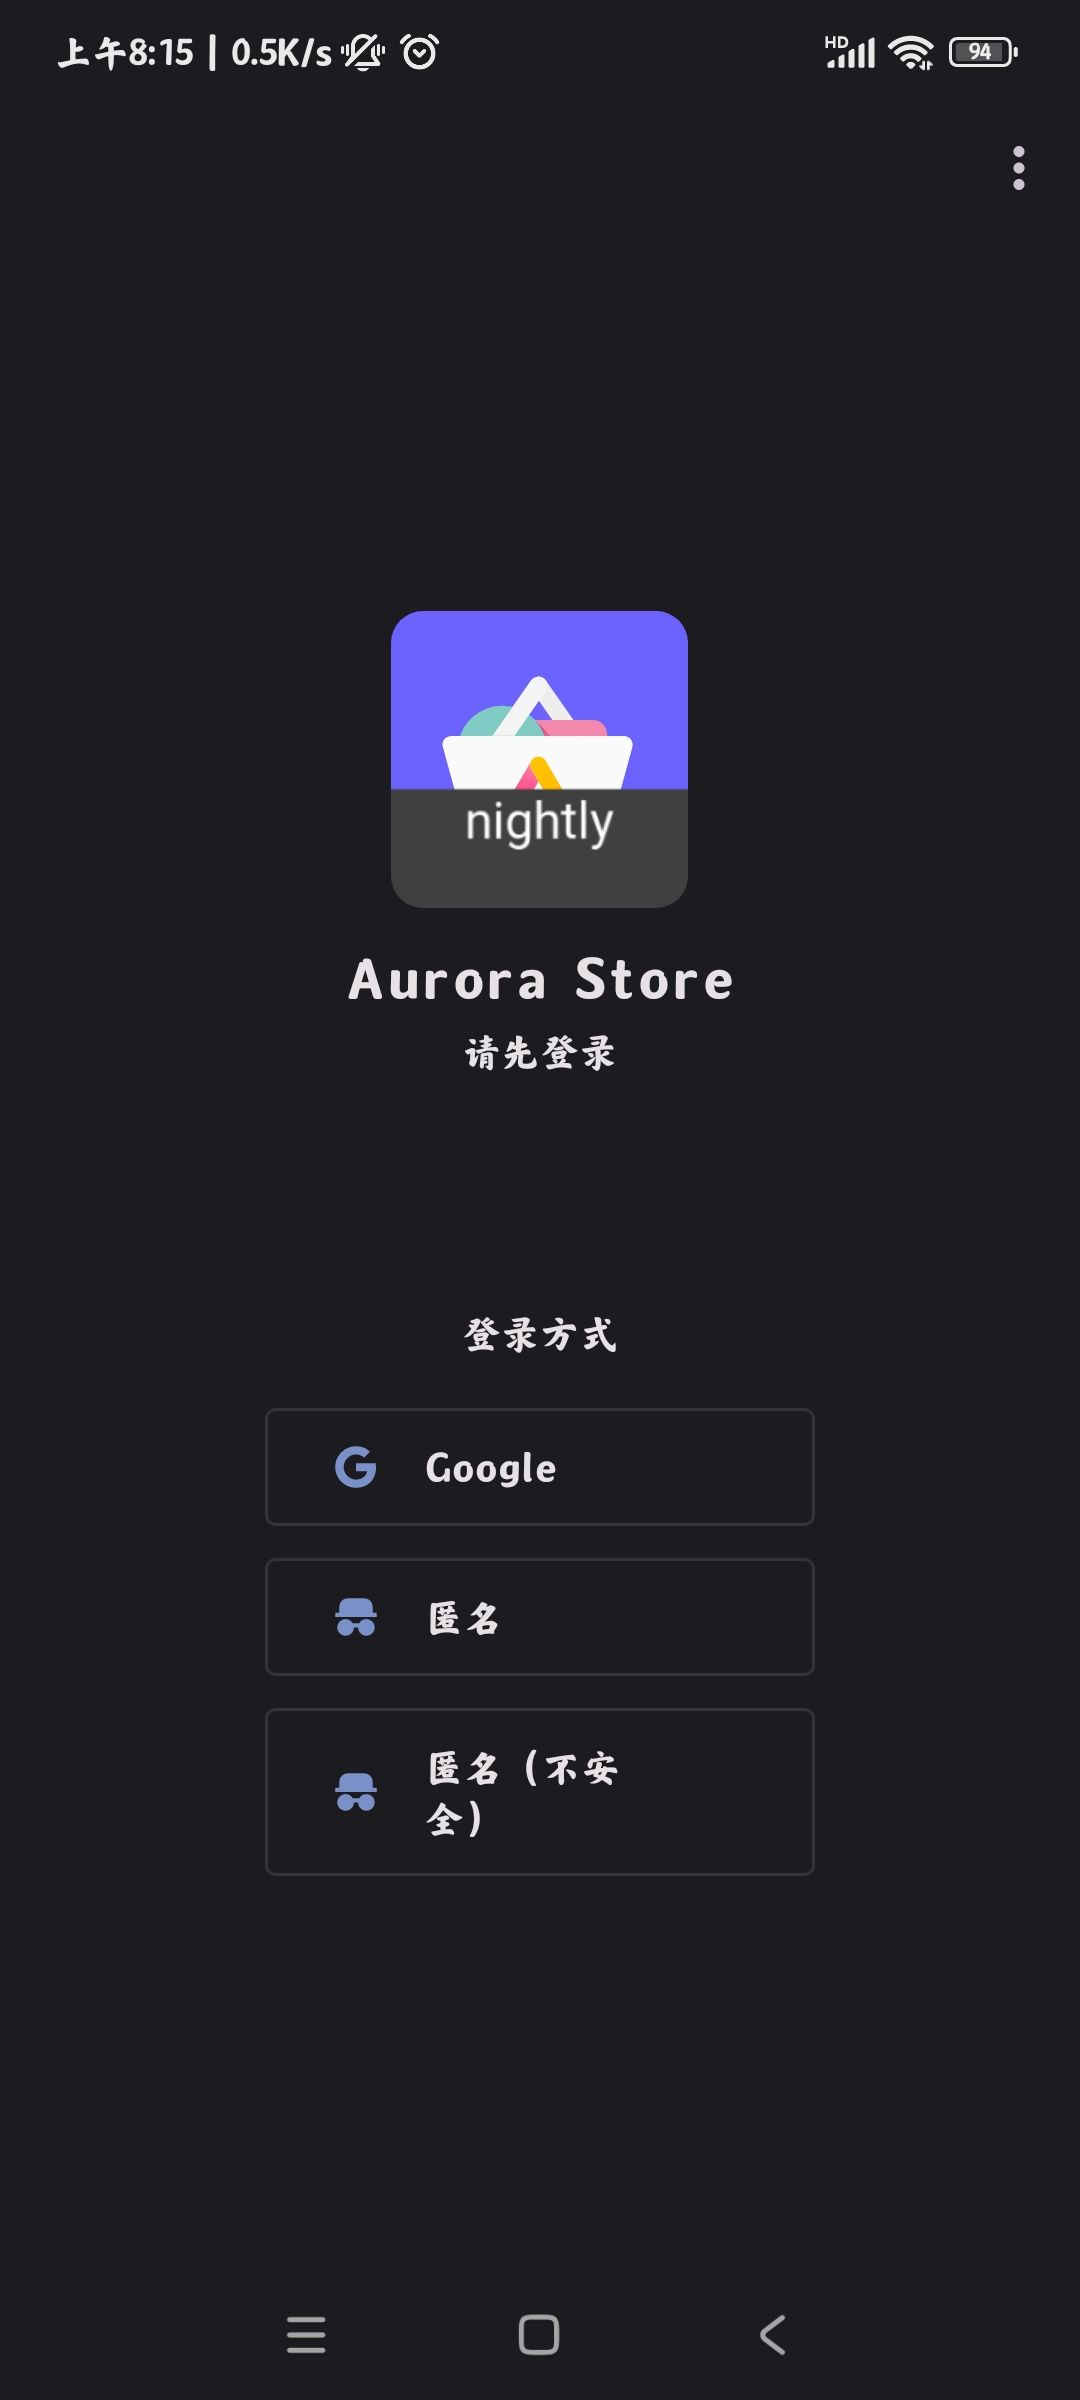 Aurora Store Nightlyv4.4.1 °